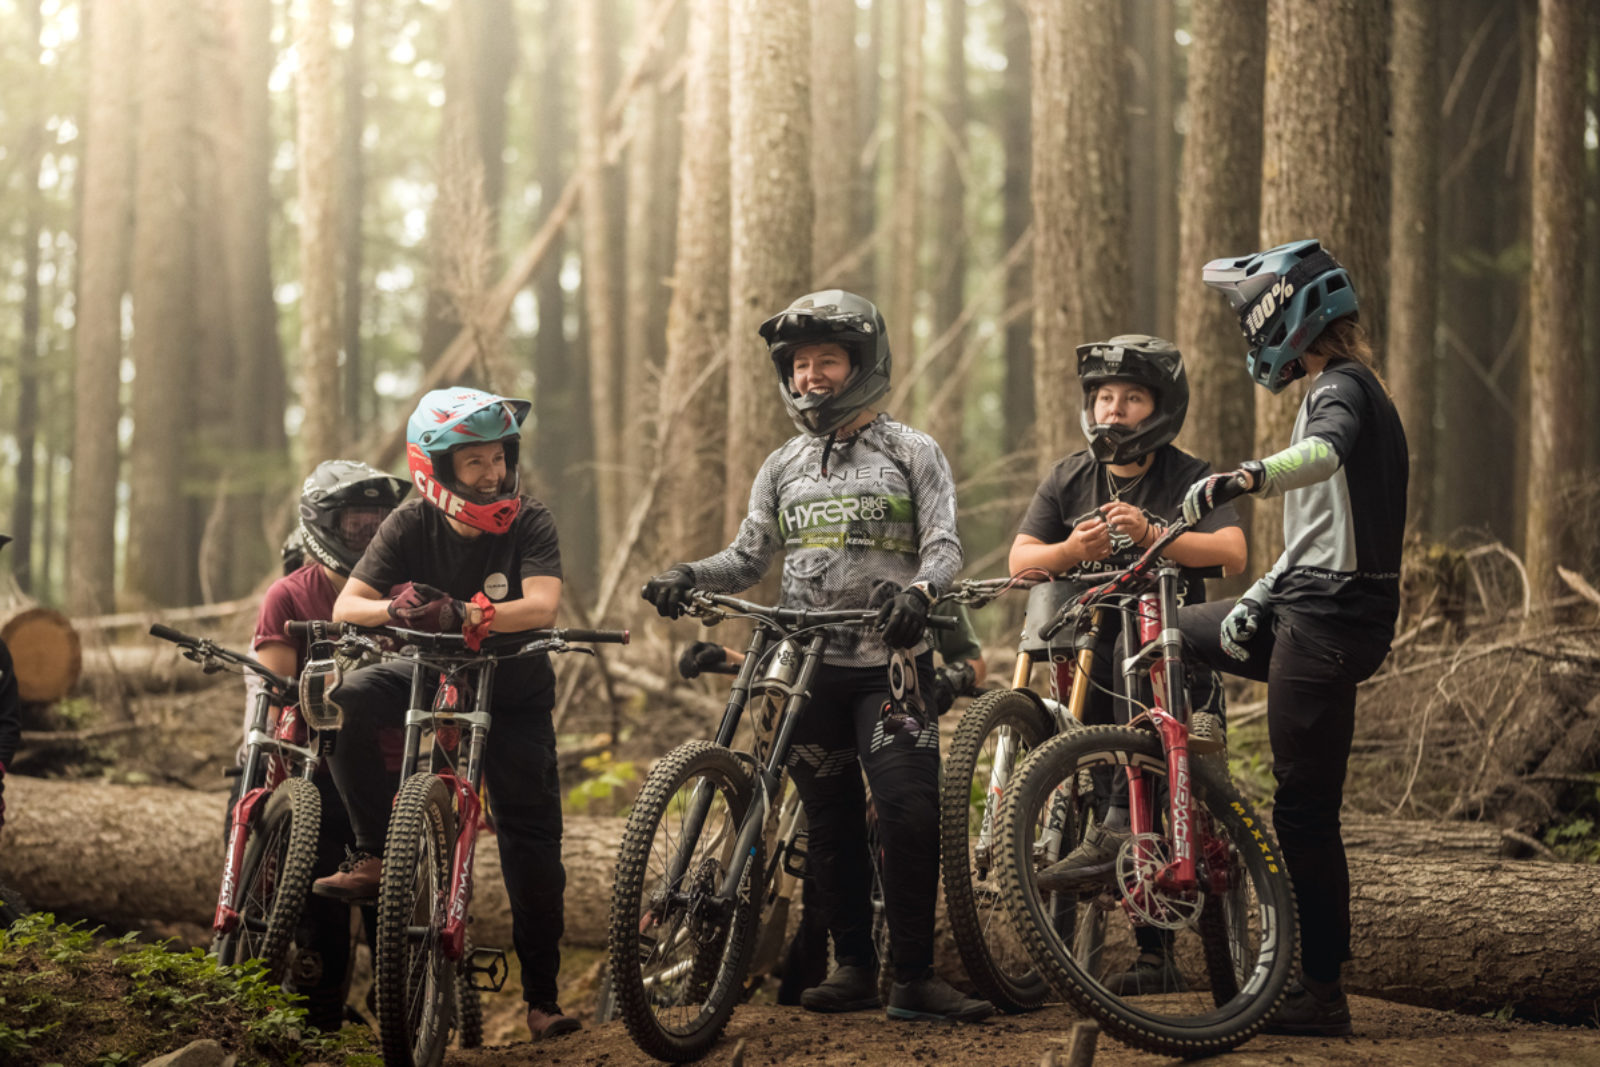 Rebel Riders Ladies Cycling Group (@LadiesRiders) / X